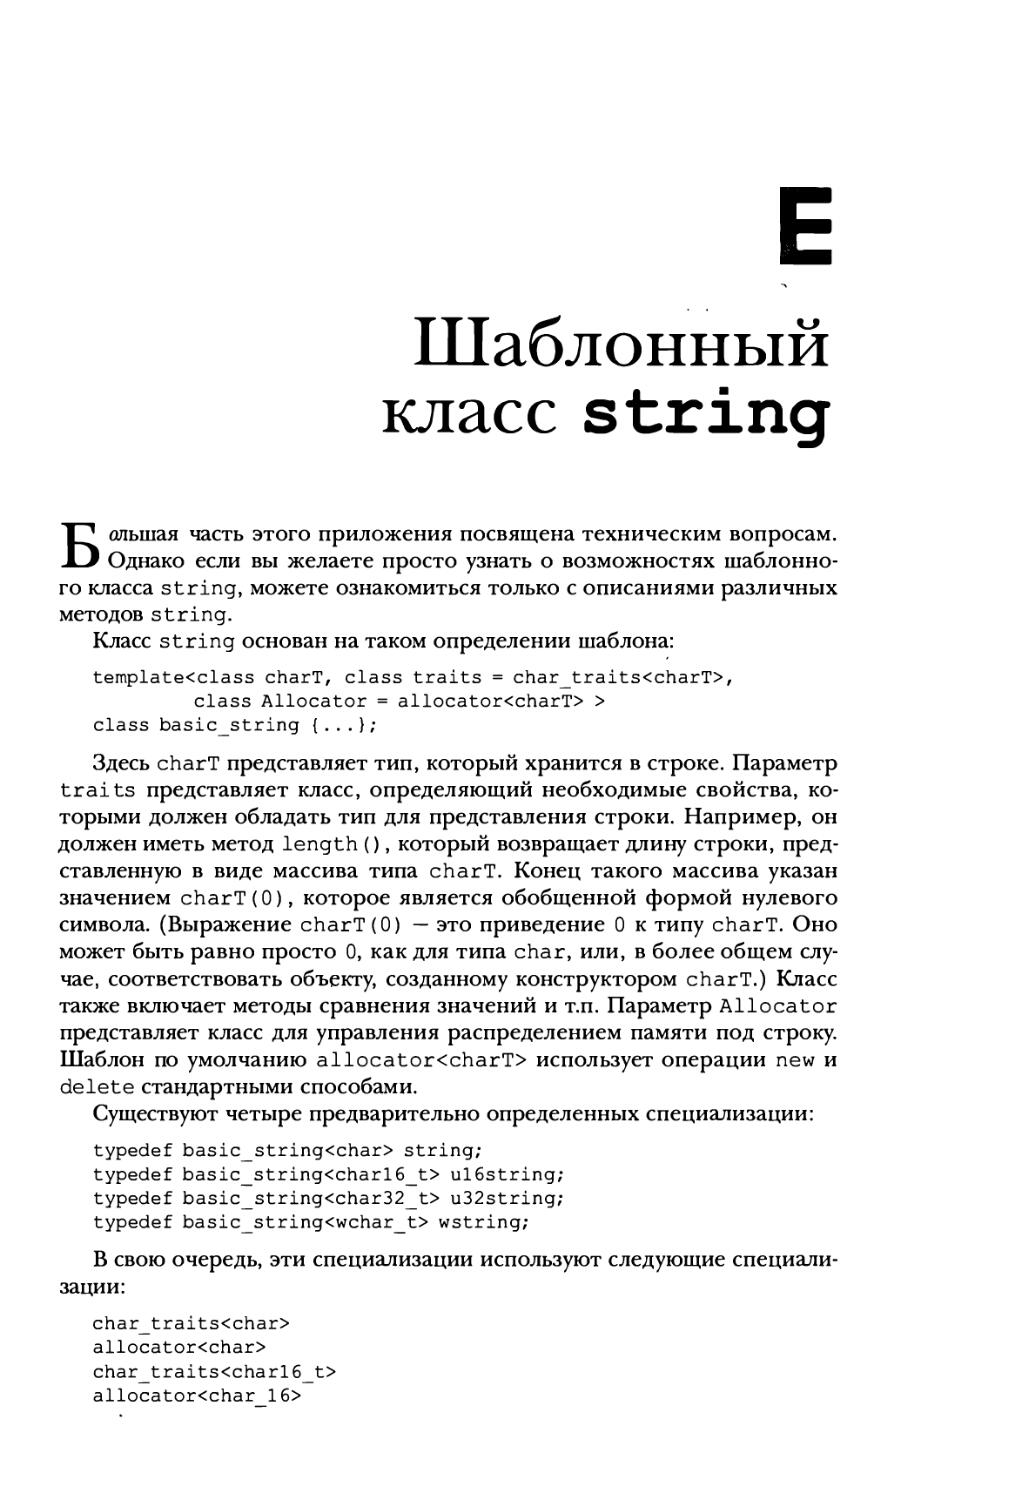 Приложение Е. Шаблонный класс string